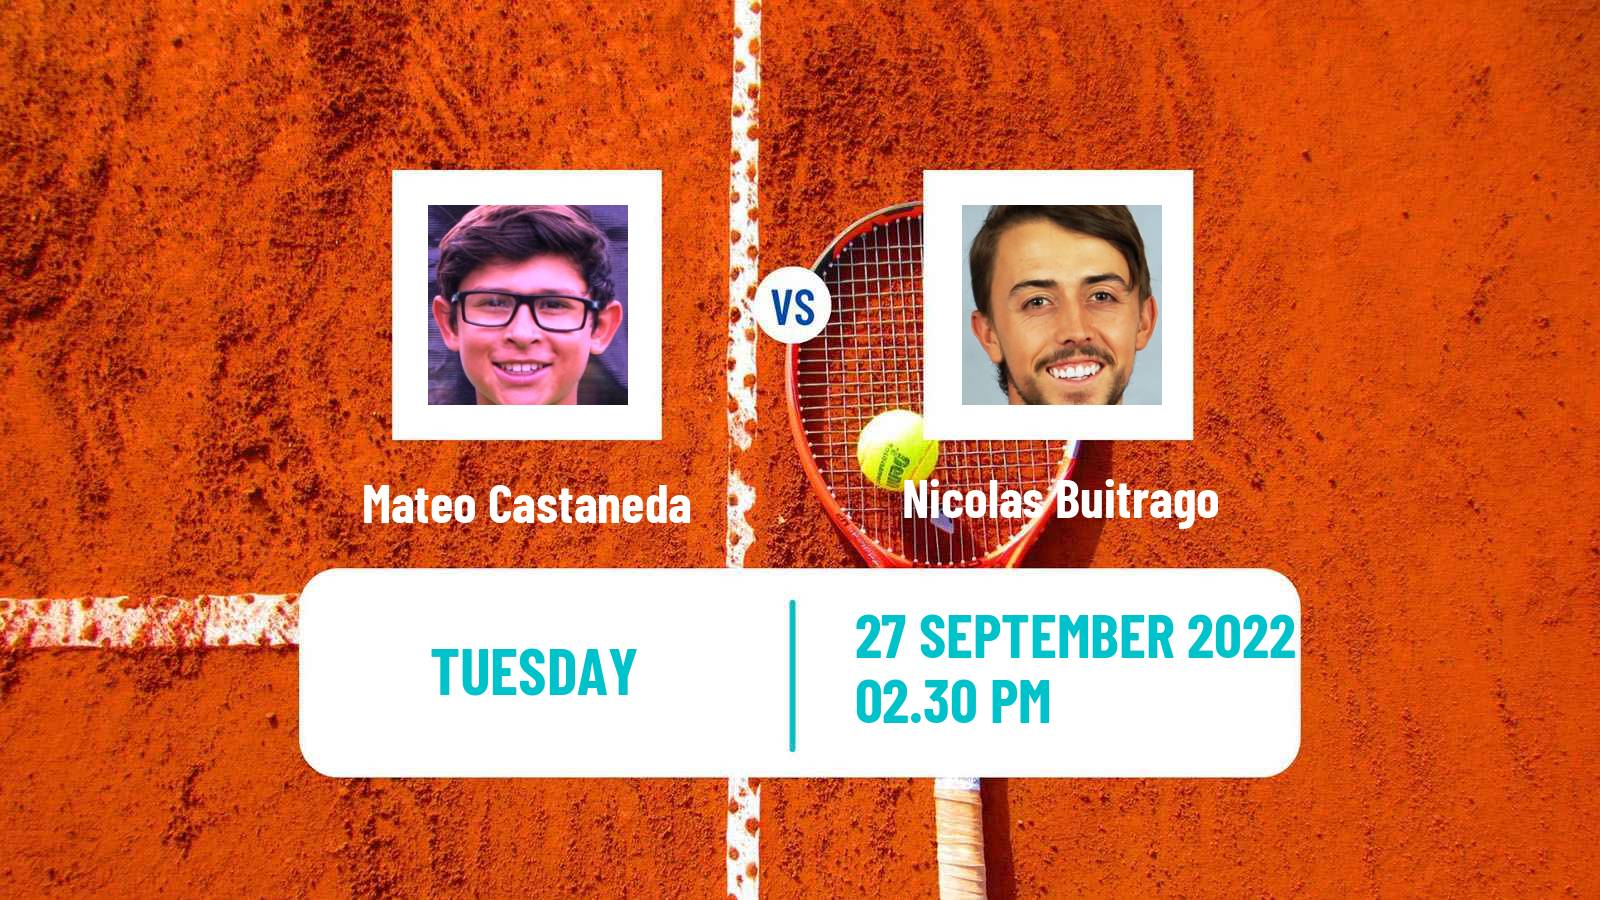 Tennis ITF Tournaments Mateo Castaneda - Nicolas Buitrago